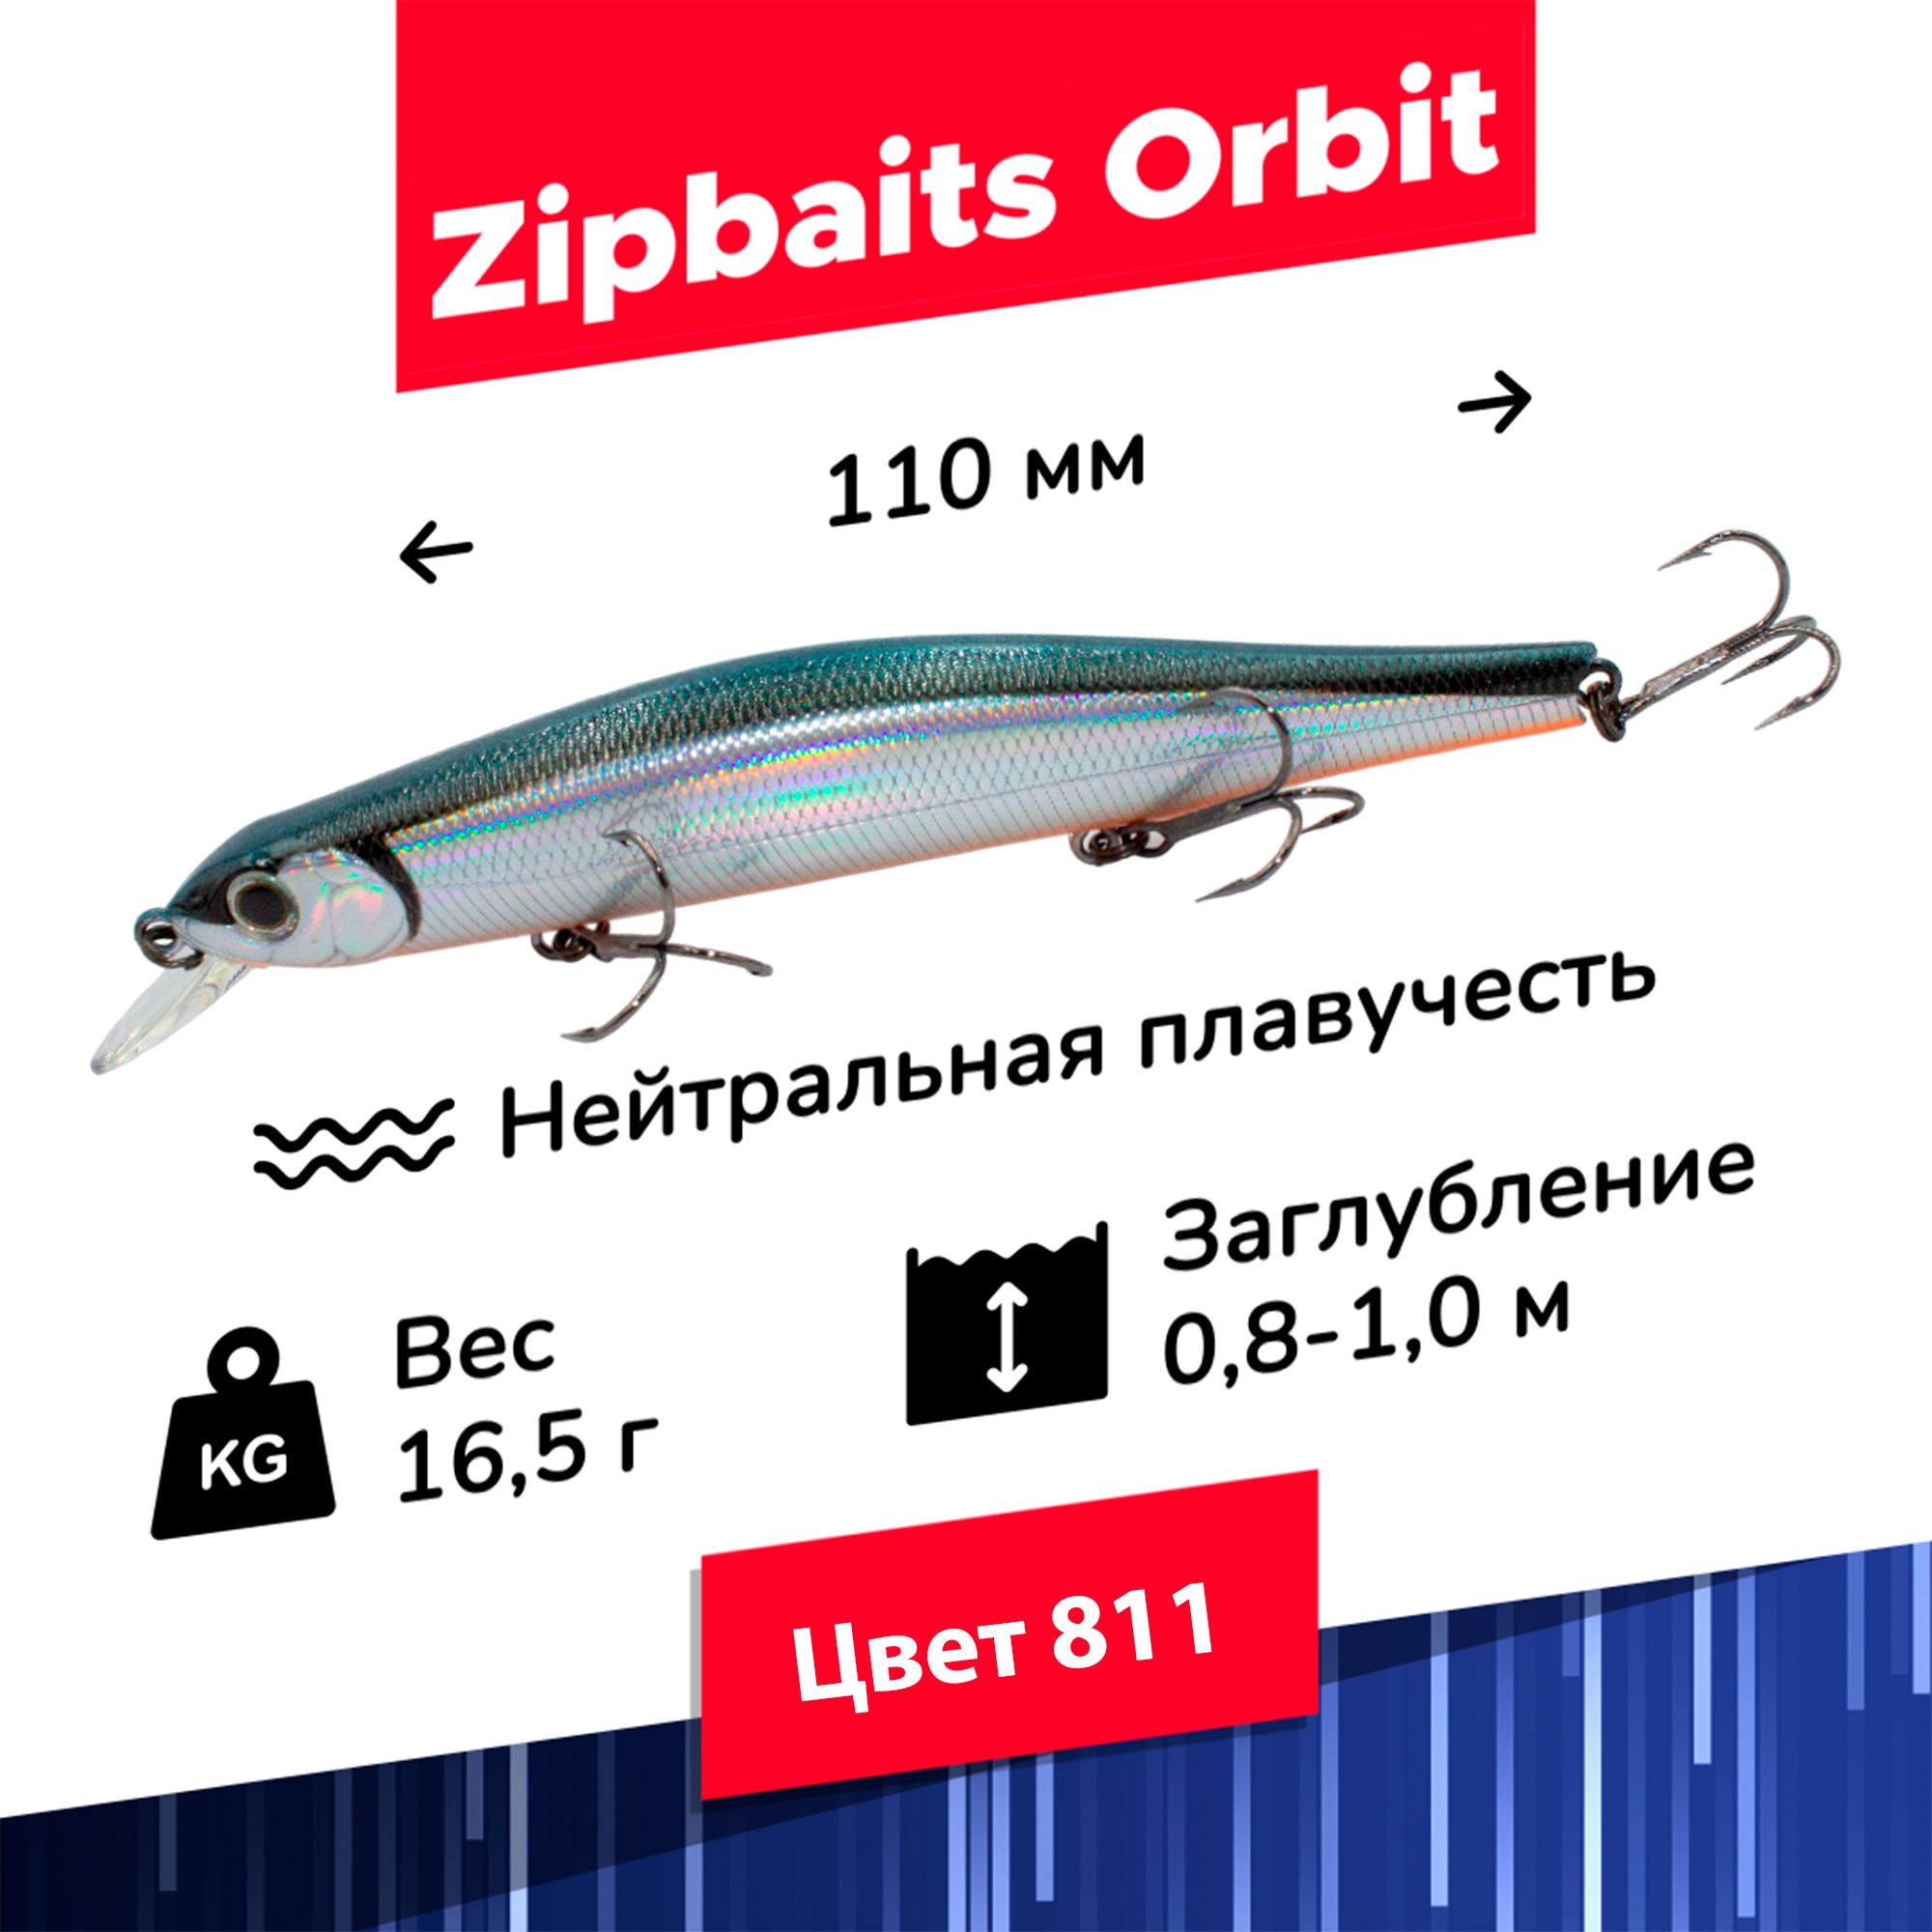 ZipBaitsOrbit110Sp